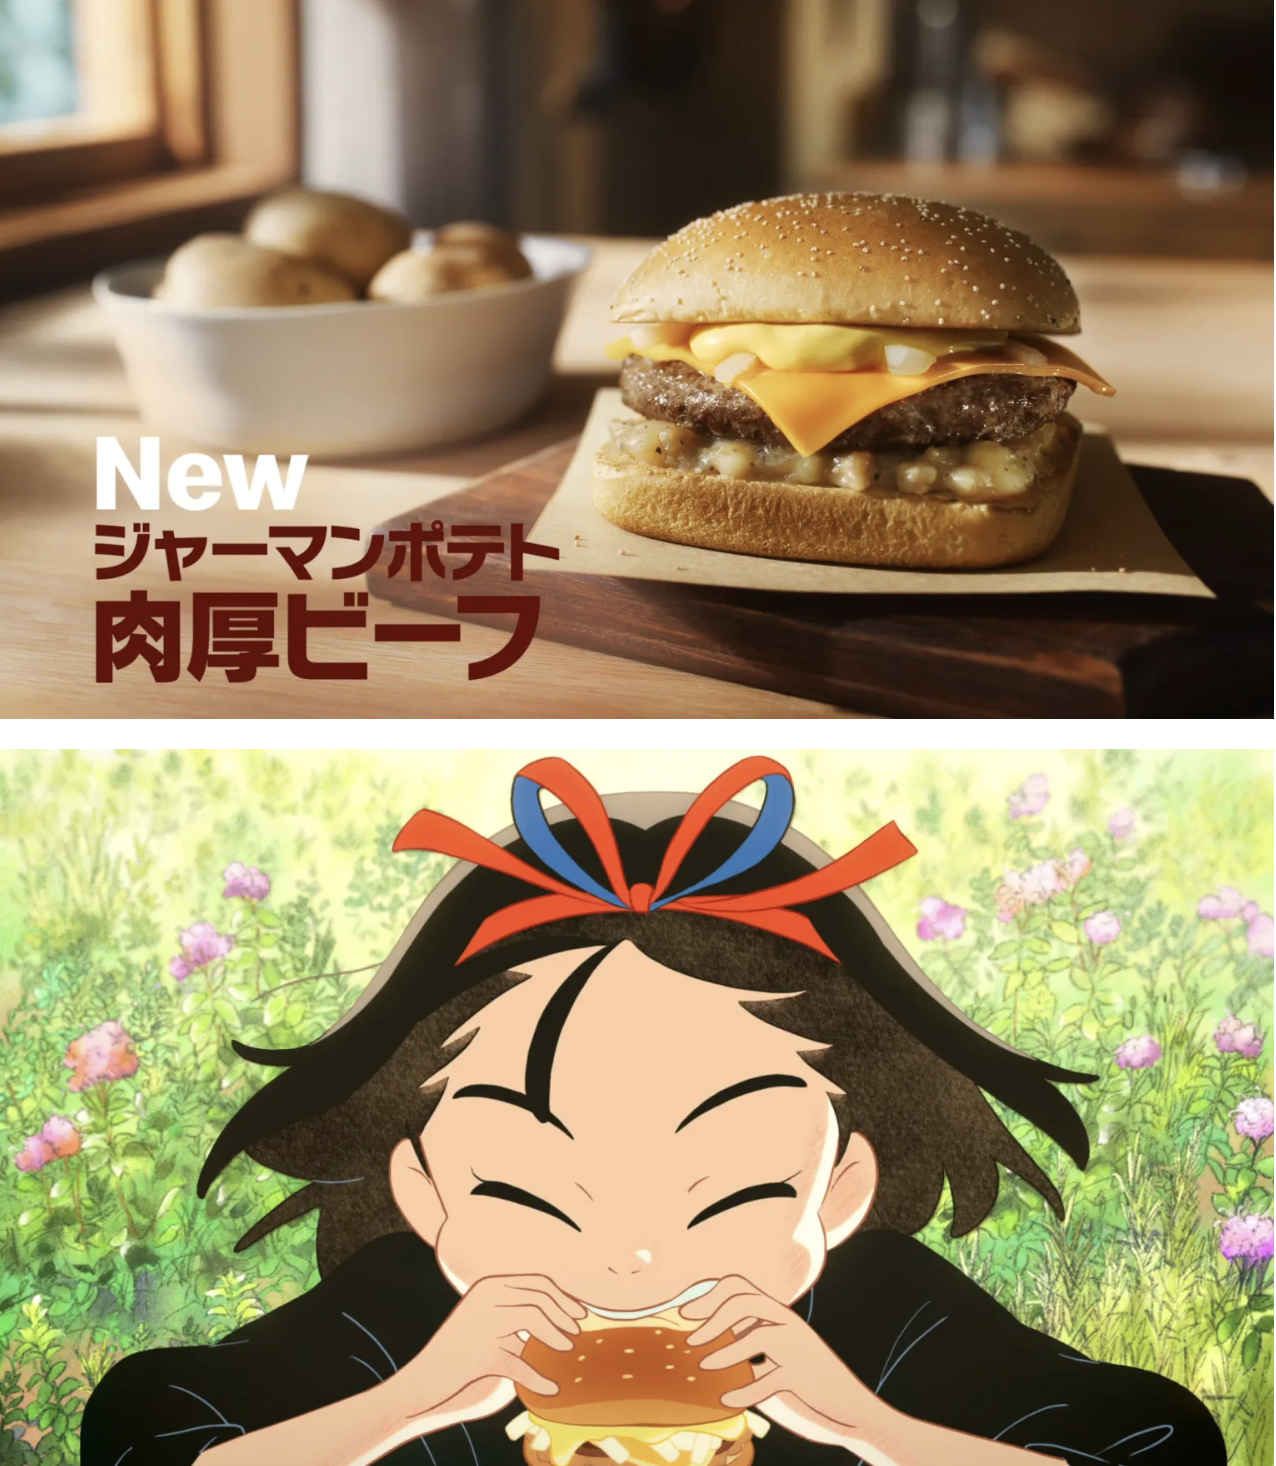 マクドナルド、日本で新しいバーガーを発売するために「キキの配達サービス」と協力